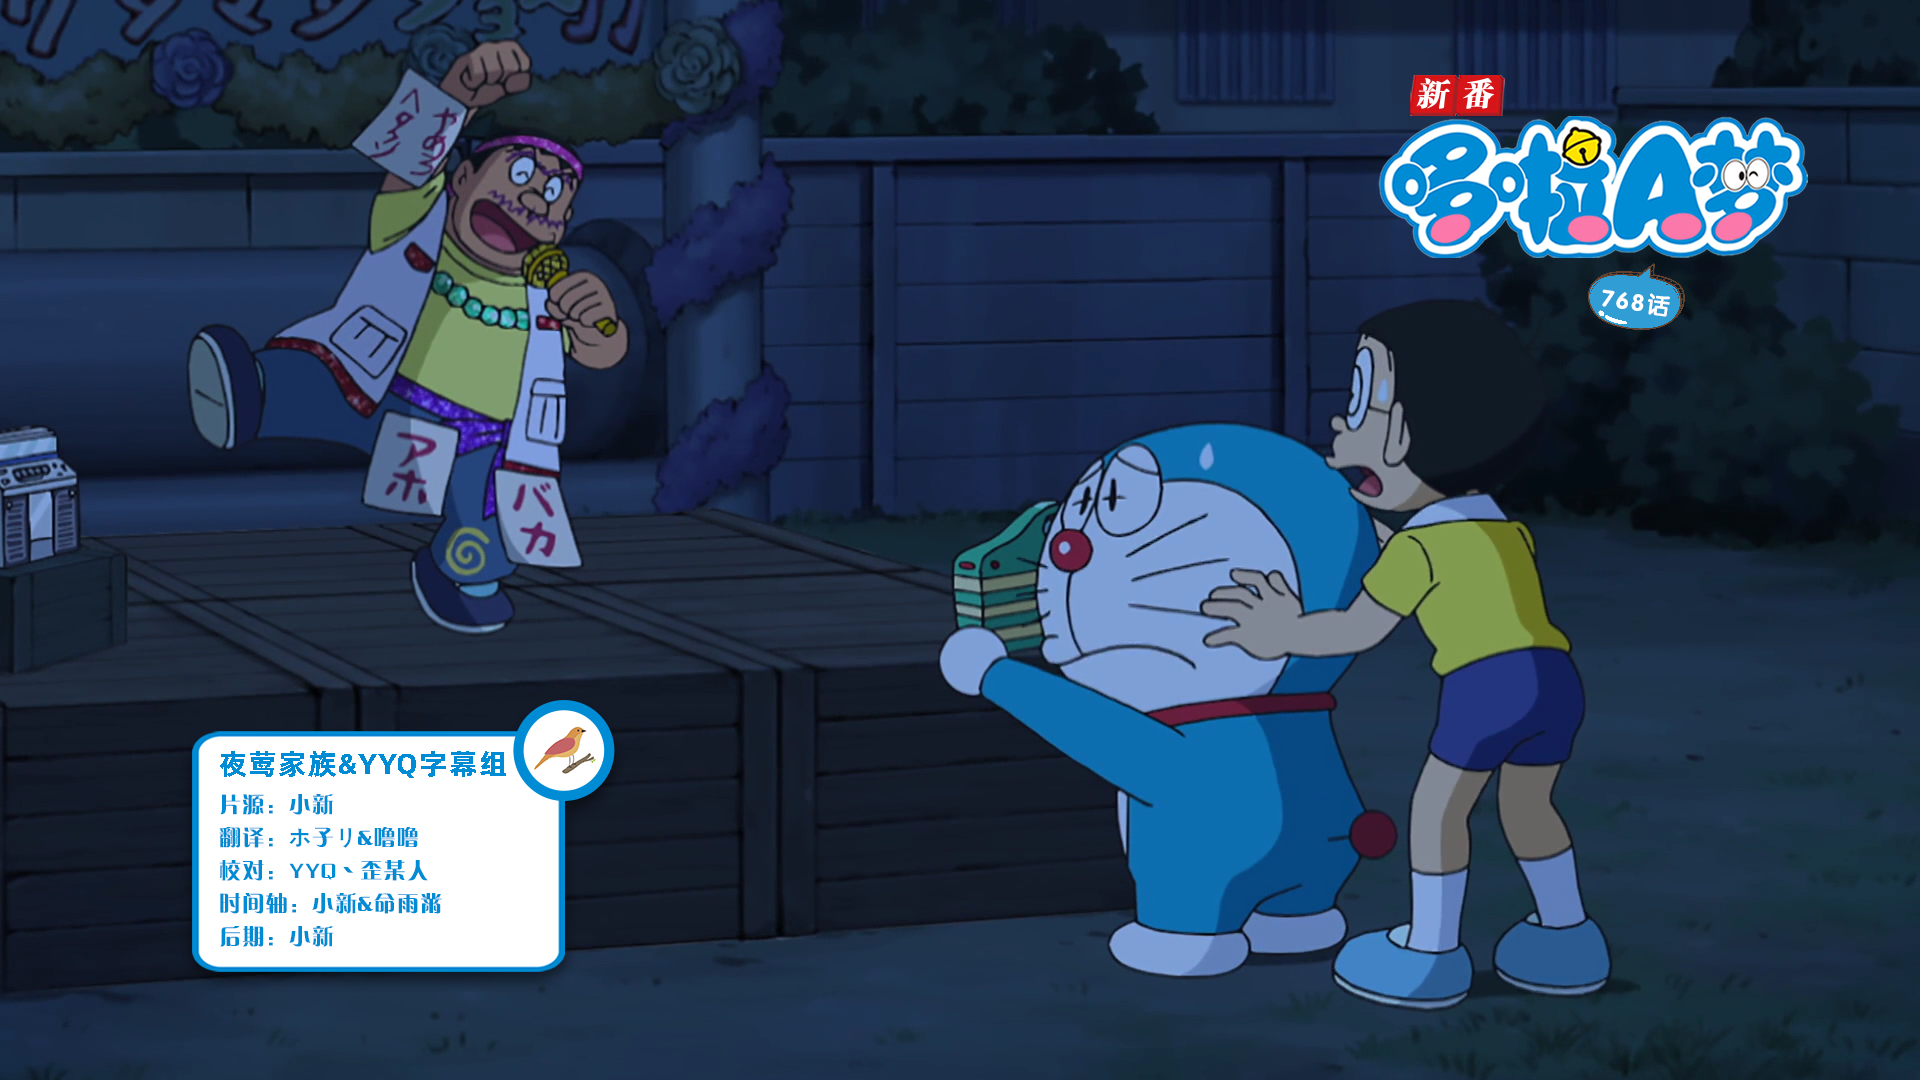 [夜莺家族&YYQ字幕组]New Doraemon 哆啦A梦新番[768][2023.07.22][AVC][1080P][GB_JP]插图icecomic动漫-云之彼端,约定的地方(´･ᴗ･`)2